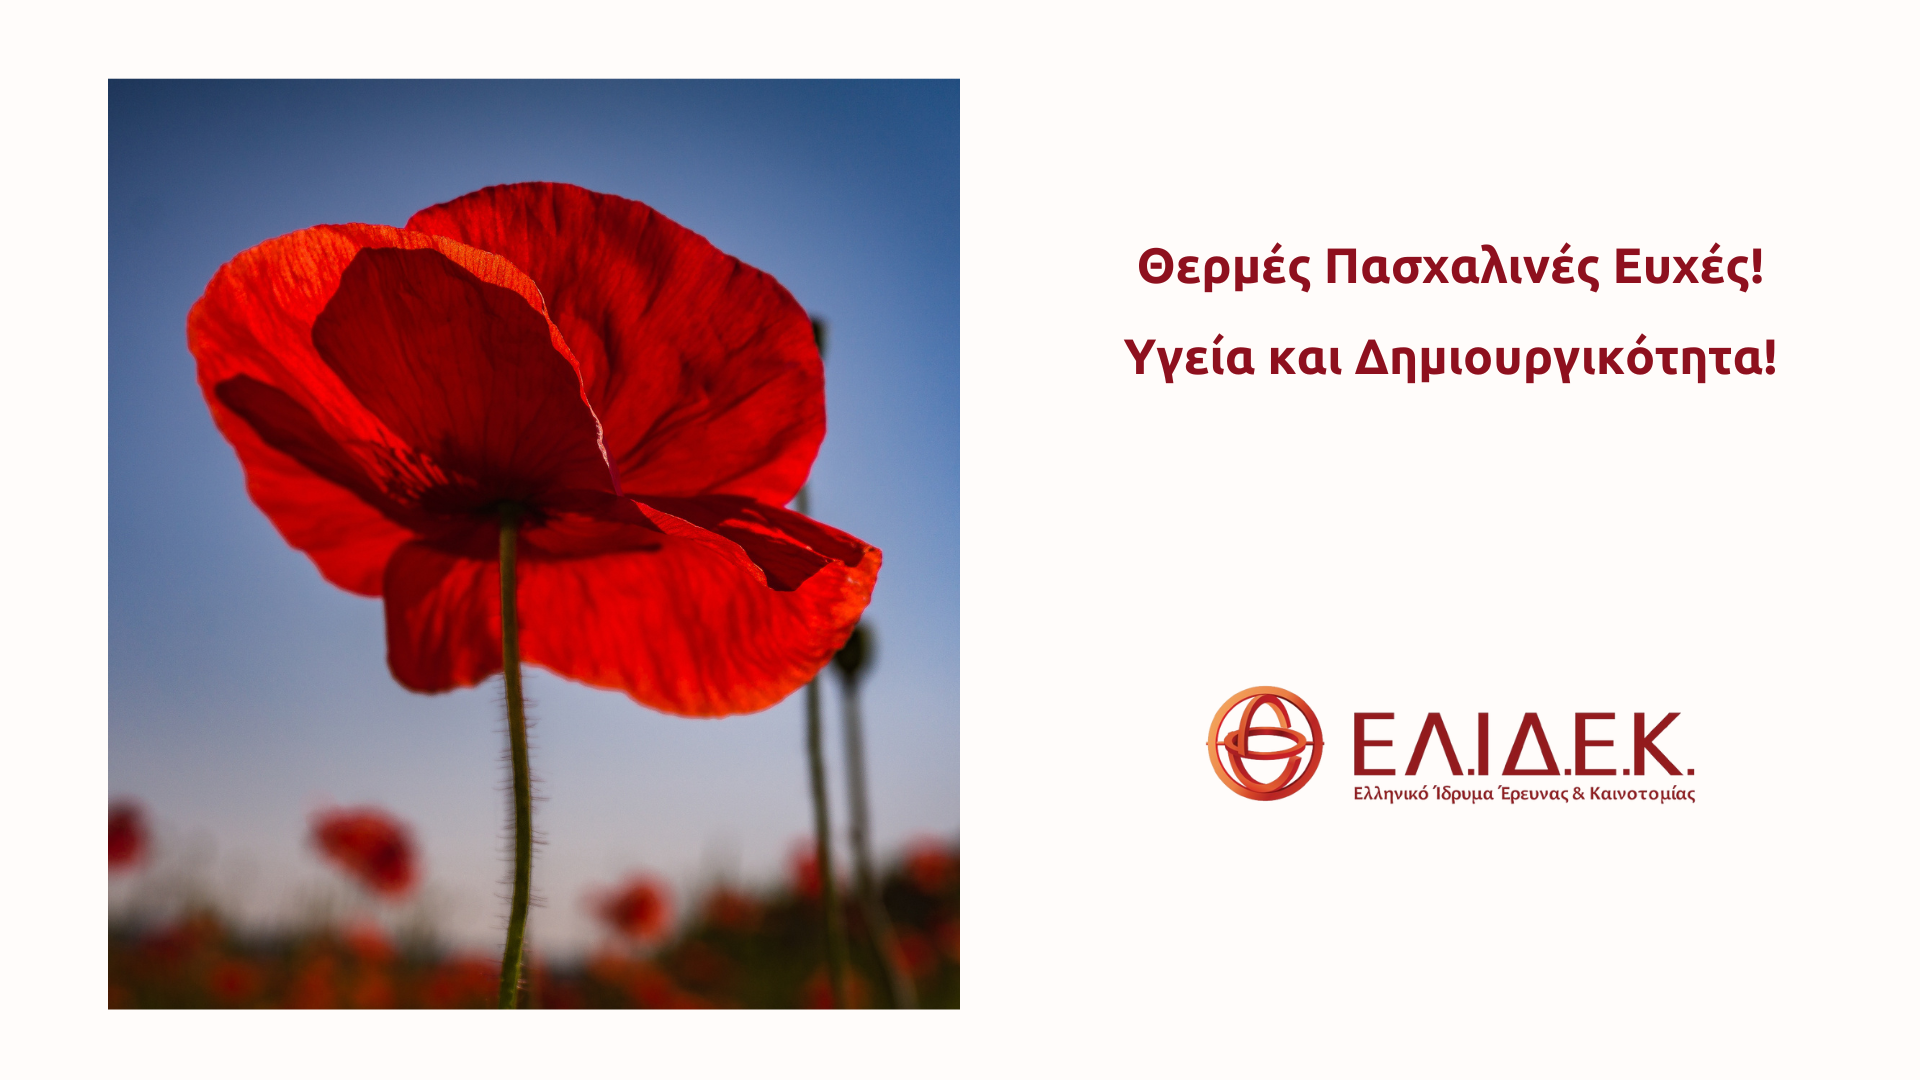 Το Ελληνικό Ίδρυμα Έρευνας και Καινοτομίας σας εύχεται Καλό Πάσχα!